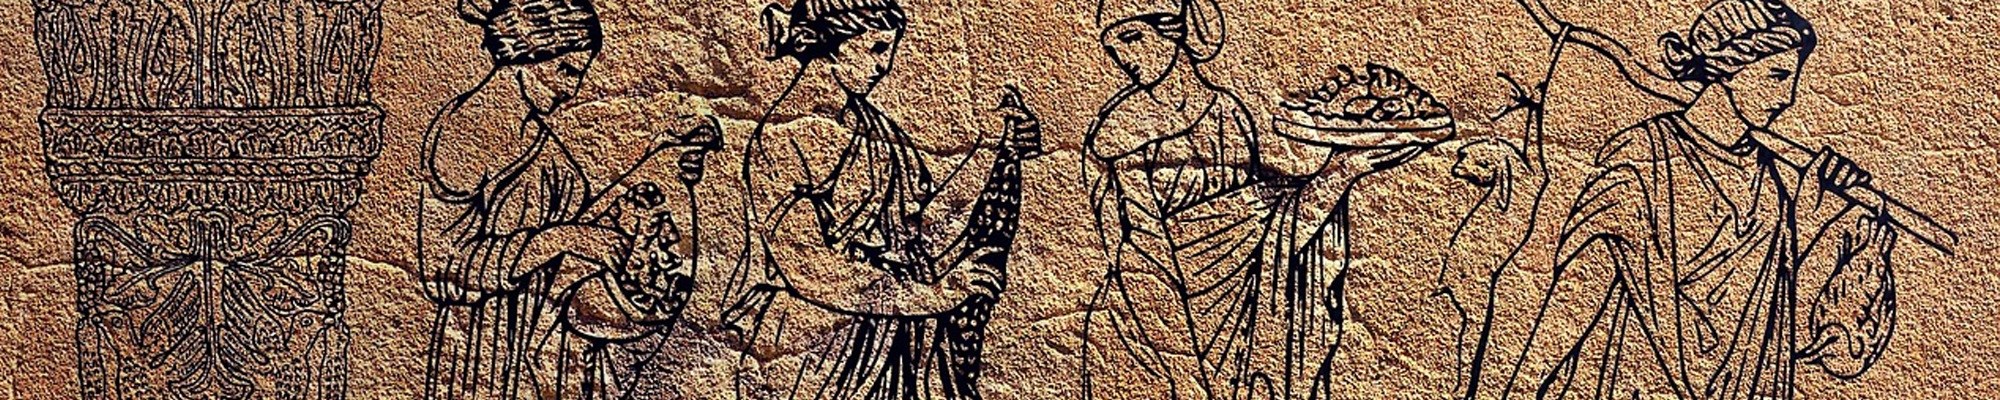 Greek wall mural of women working